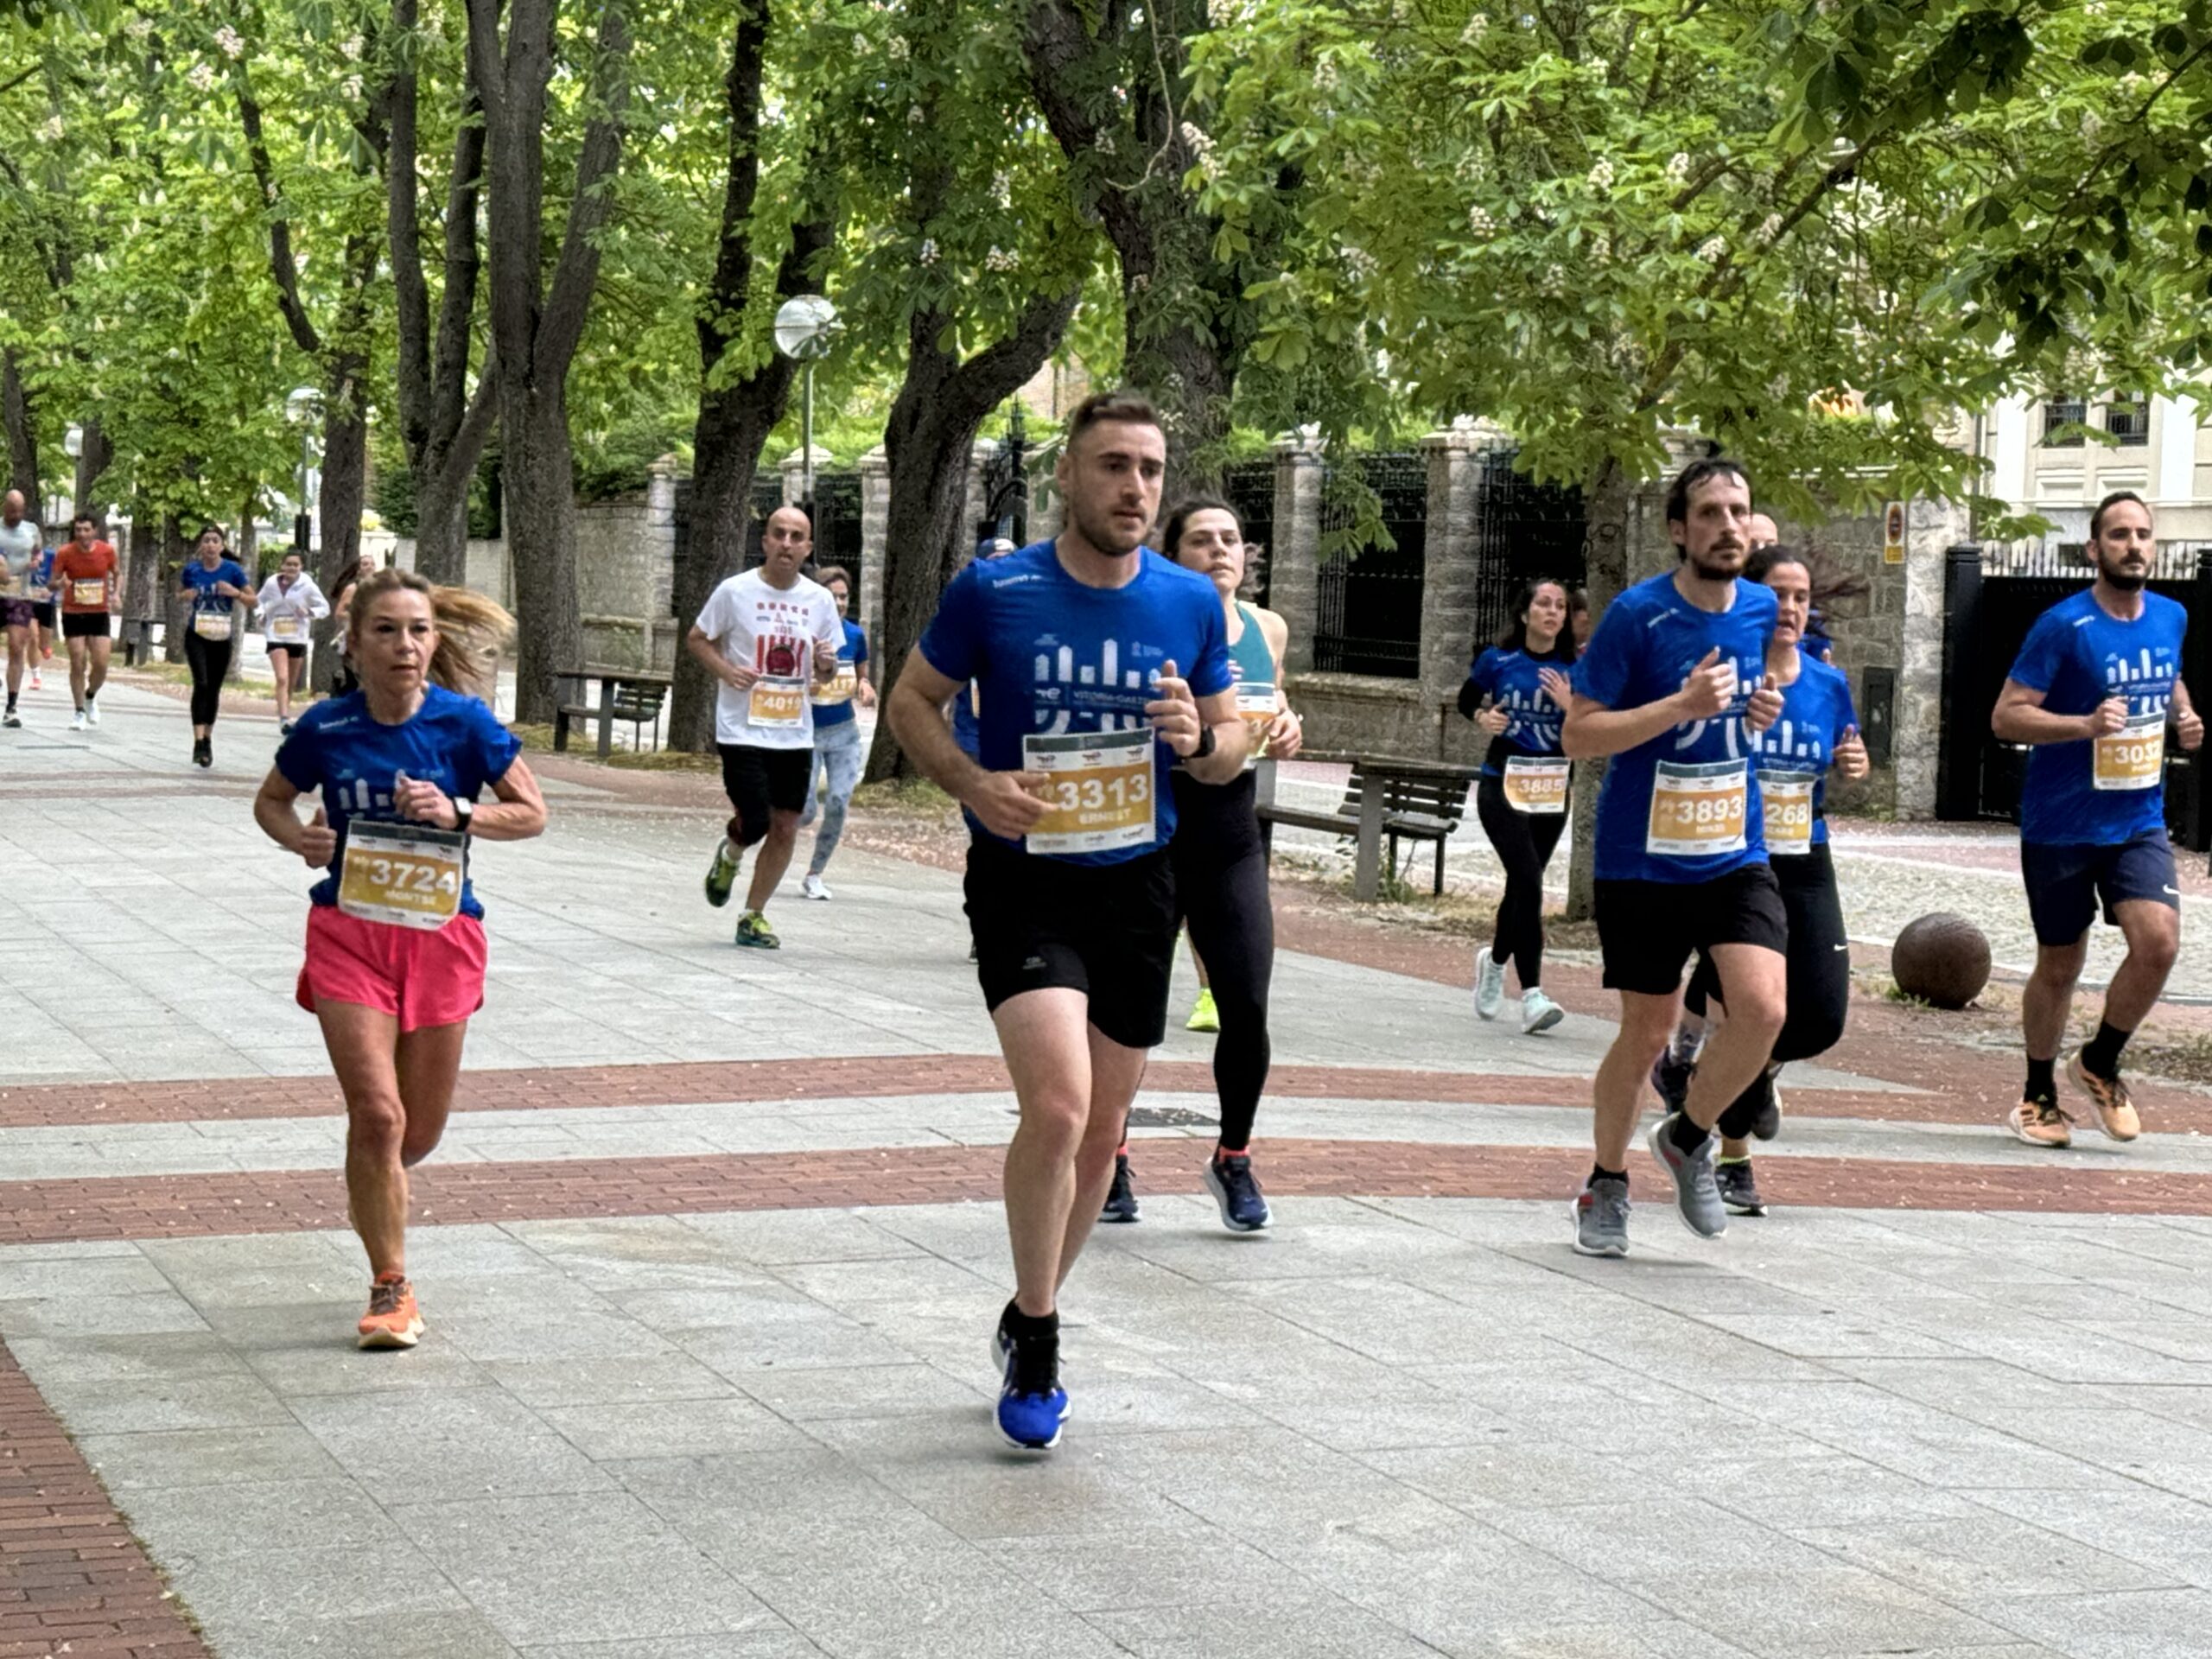 EN DIRECTO: La Maratón Martín Fiz recorre Vitoria